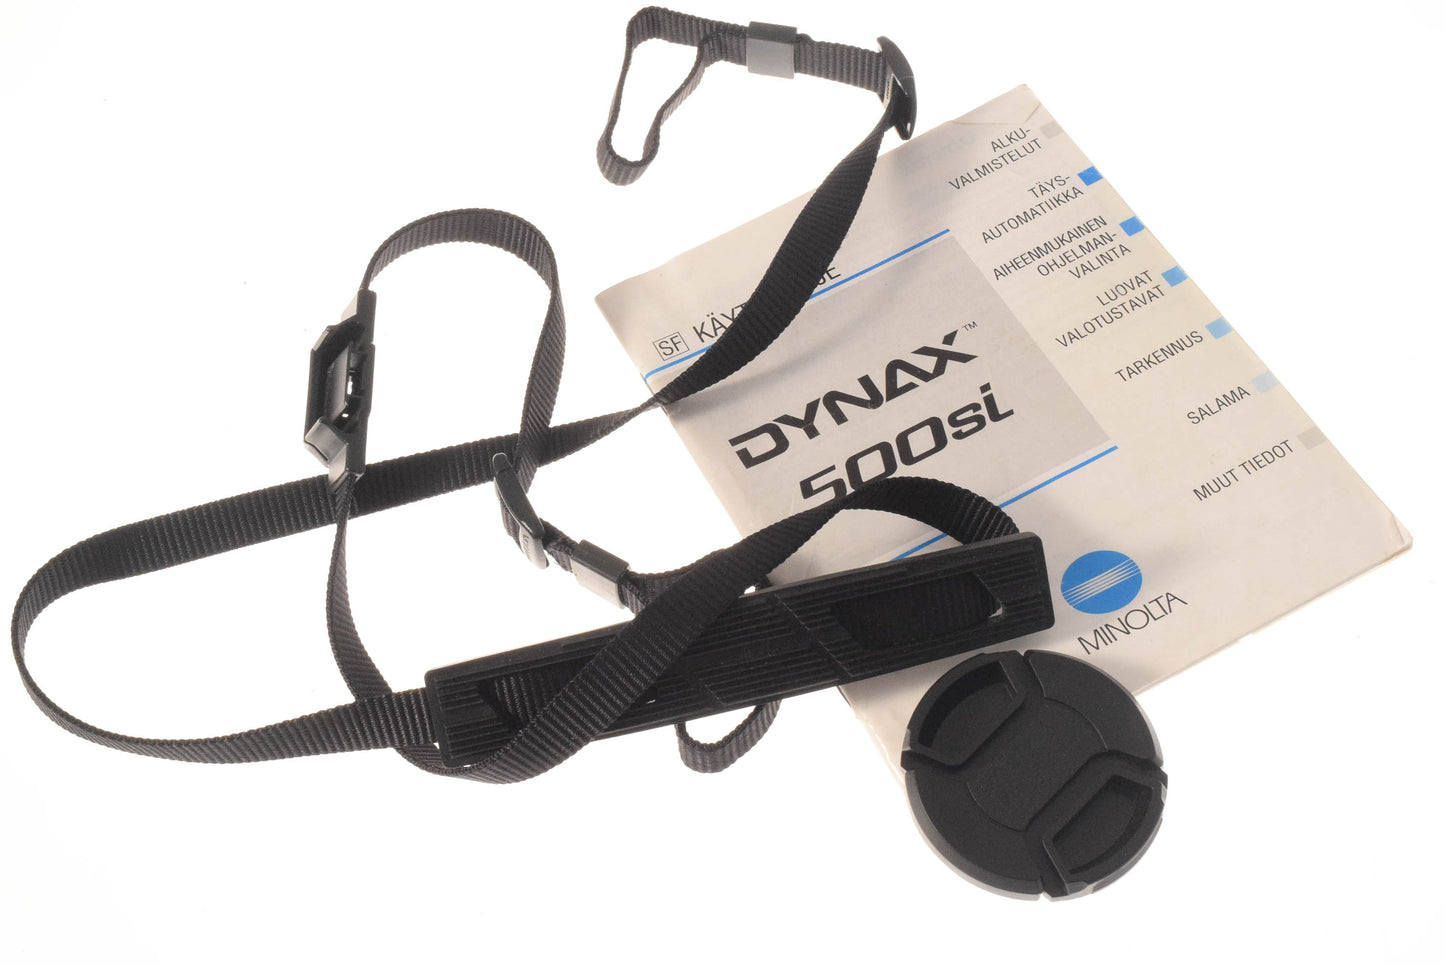 Minolta Dynax 500si + 35-70mm f3.5-4.5 AF